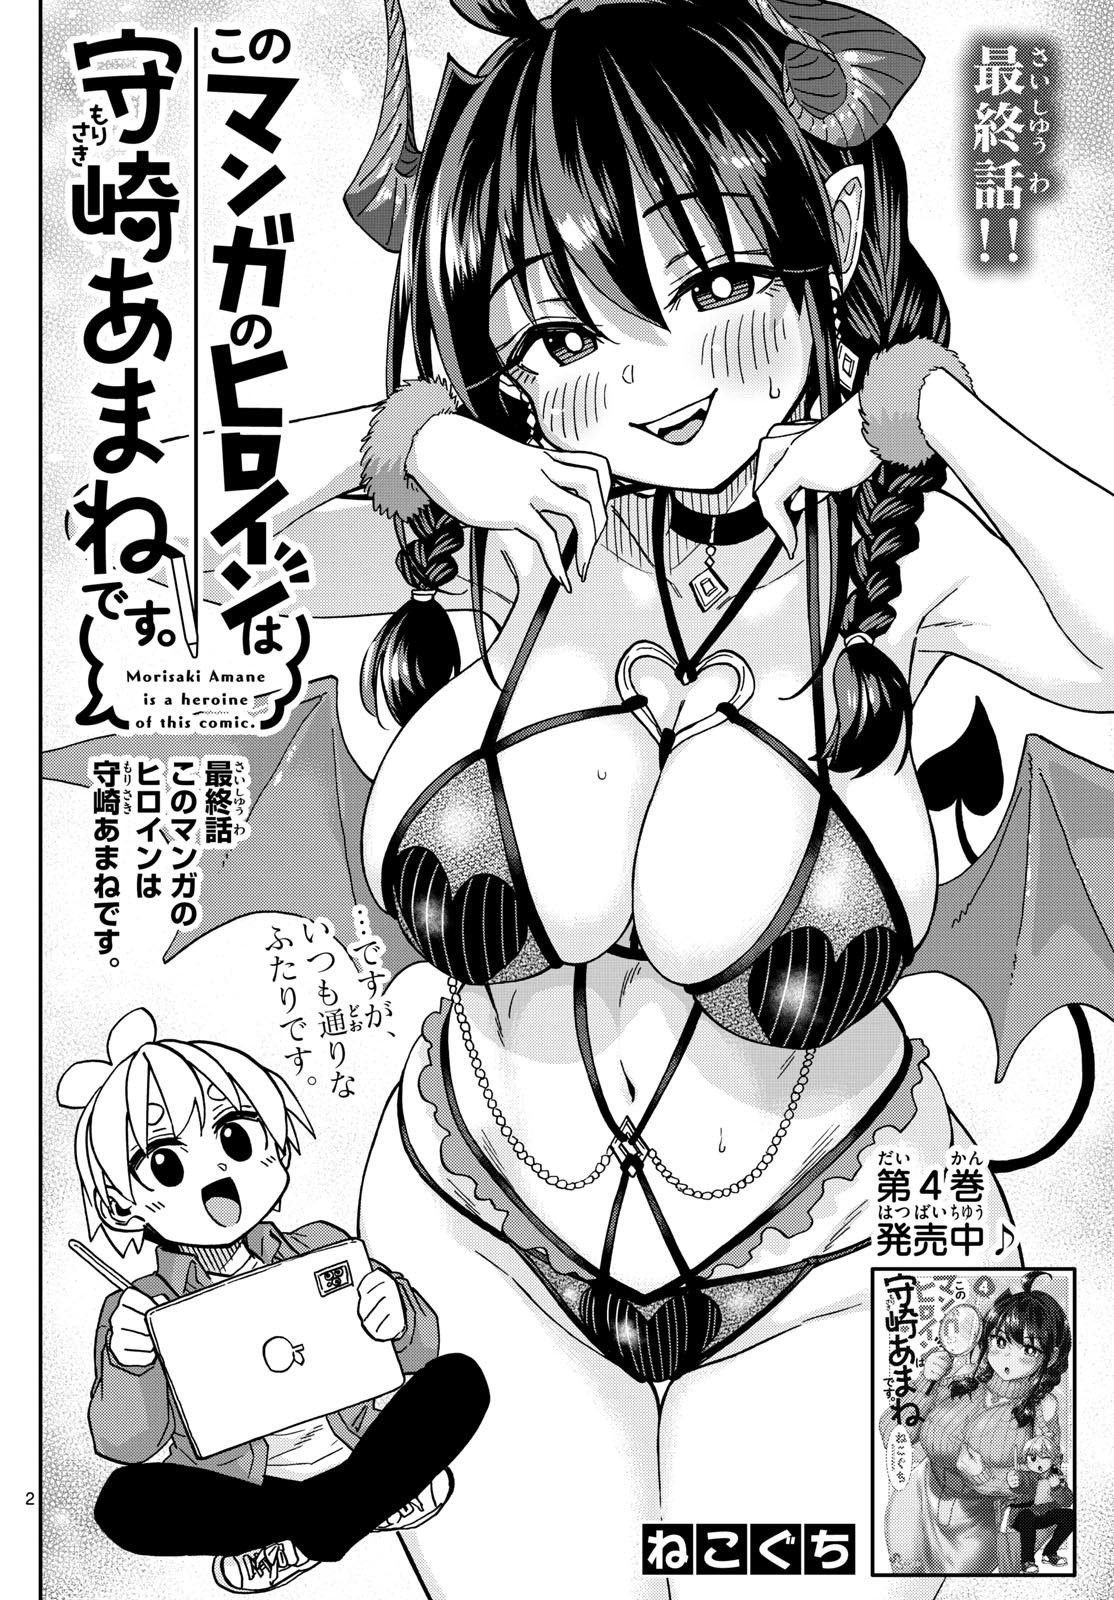 Kono Manga no Heroine wa Morisaki Amane desu - Chapter Final - Page 2